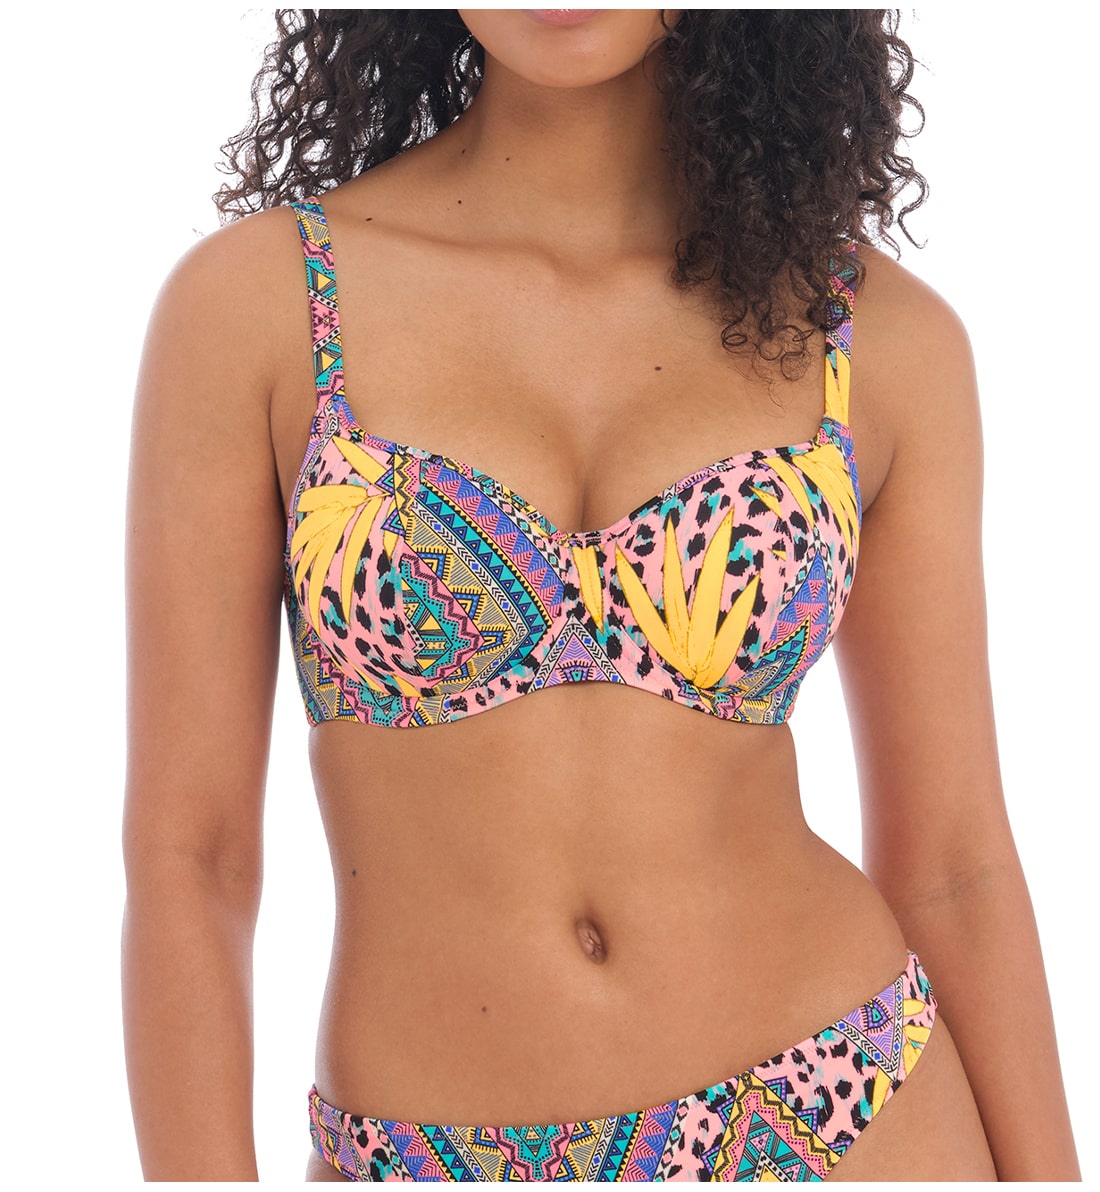 Freya Cala Fiesta Sweetheart Padded Underwire Bikini Top (200903),30D,Multi - Multi,30D